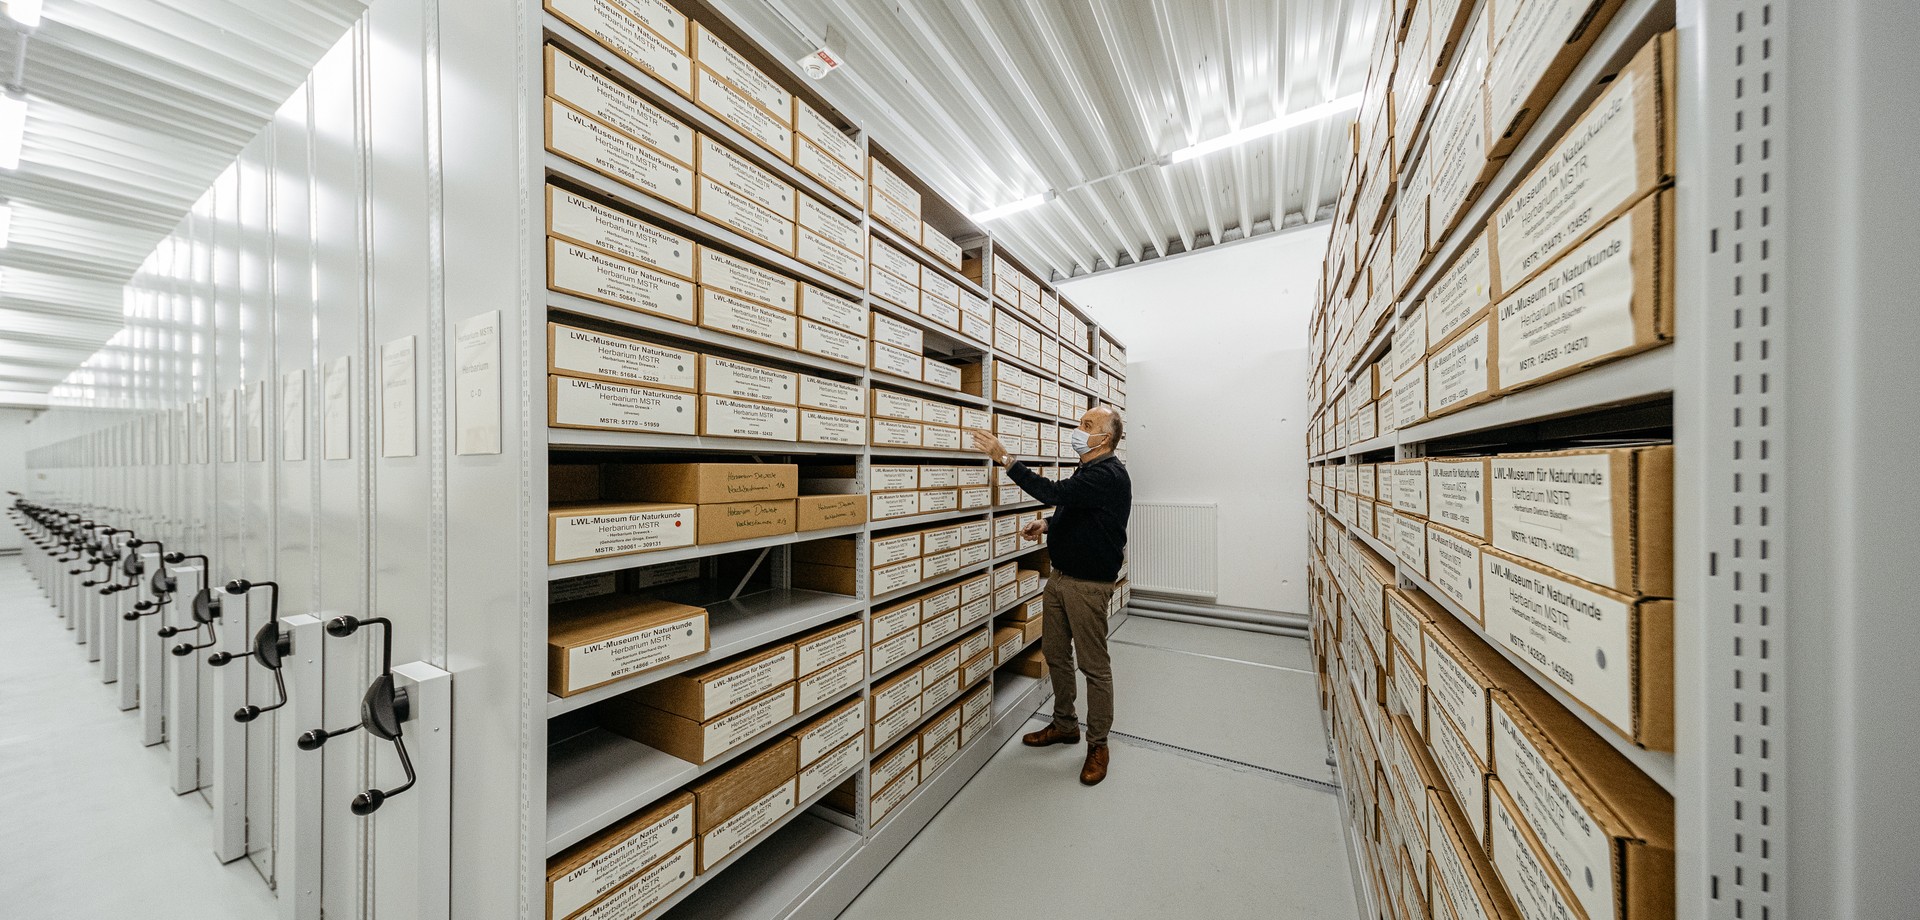 Das Herbarium in den großen Compactus-Regalen im Zentralmagazin des LWL-Museums für Naturkunde.